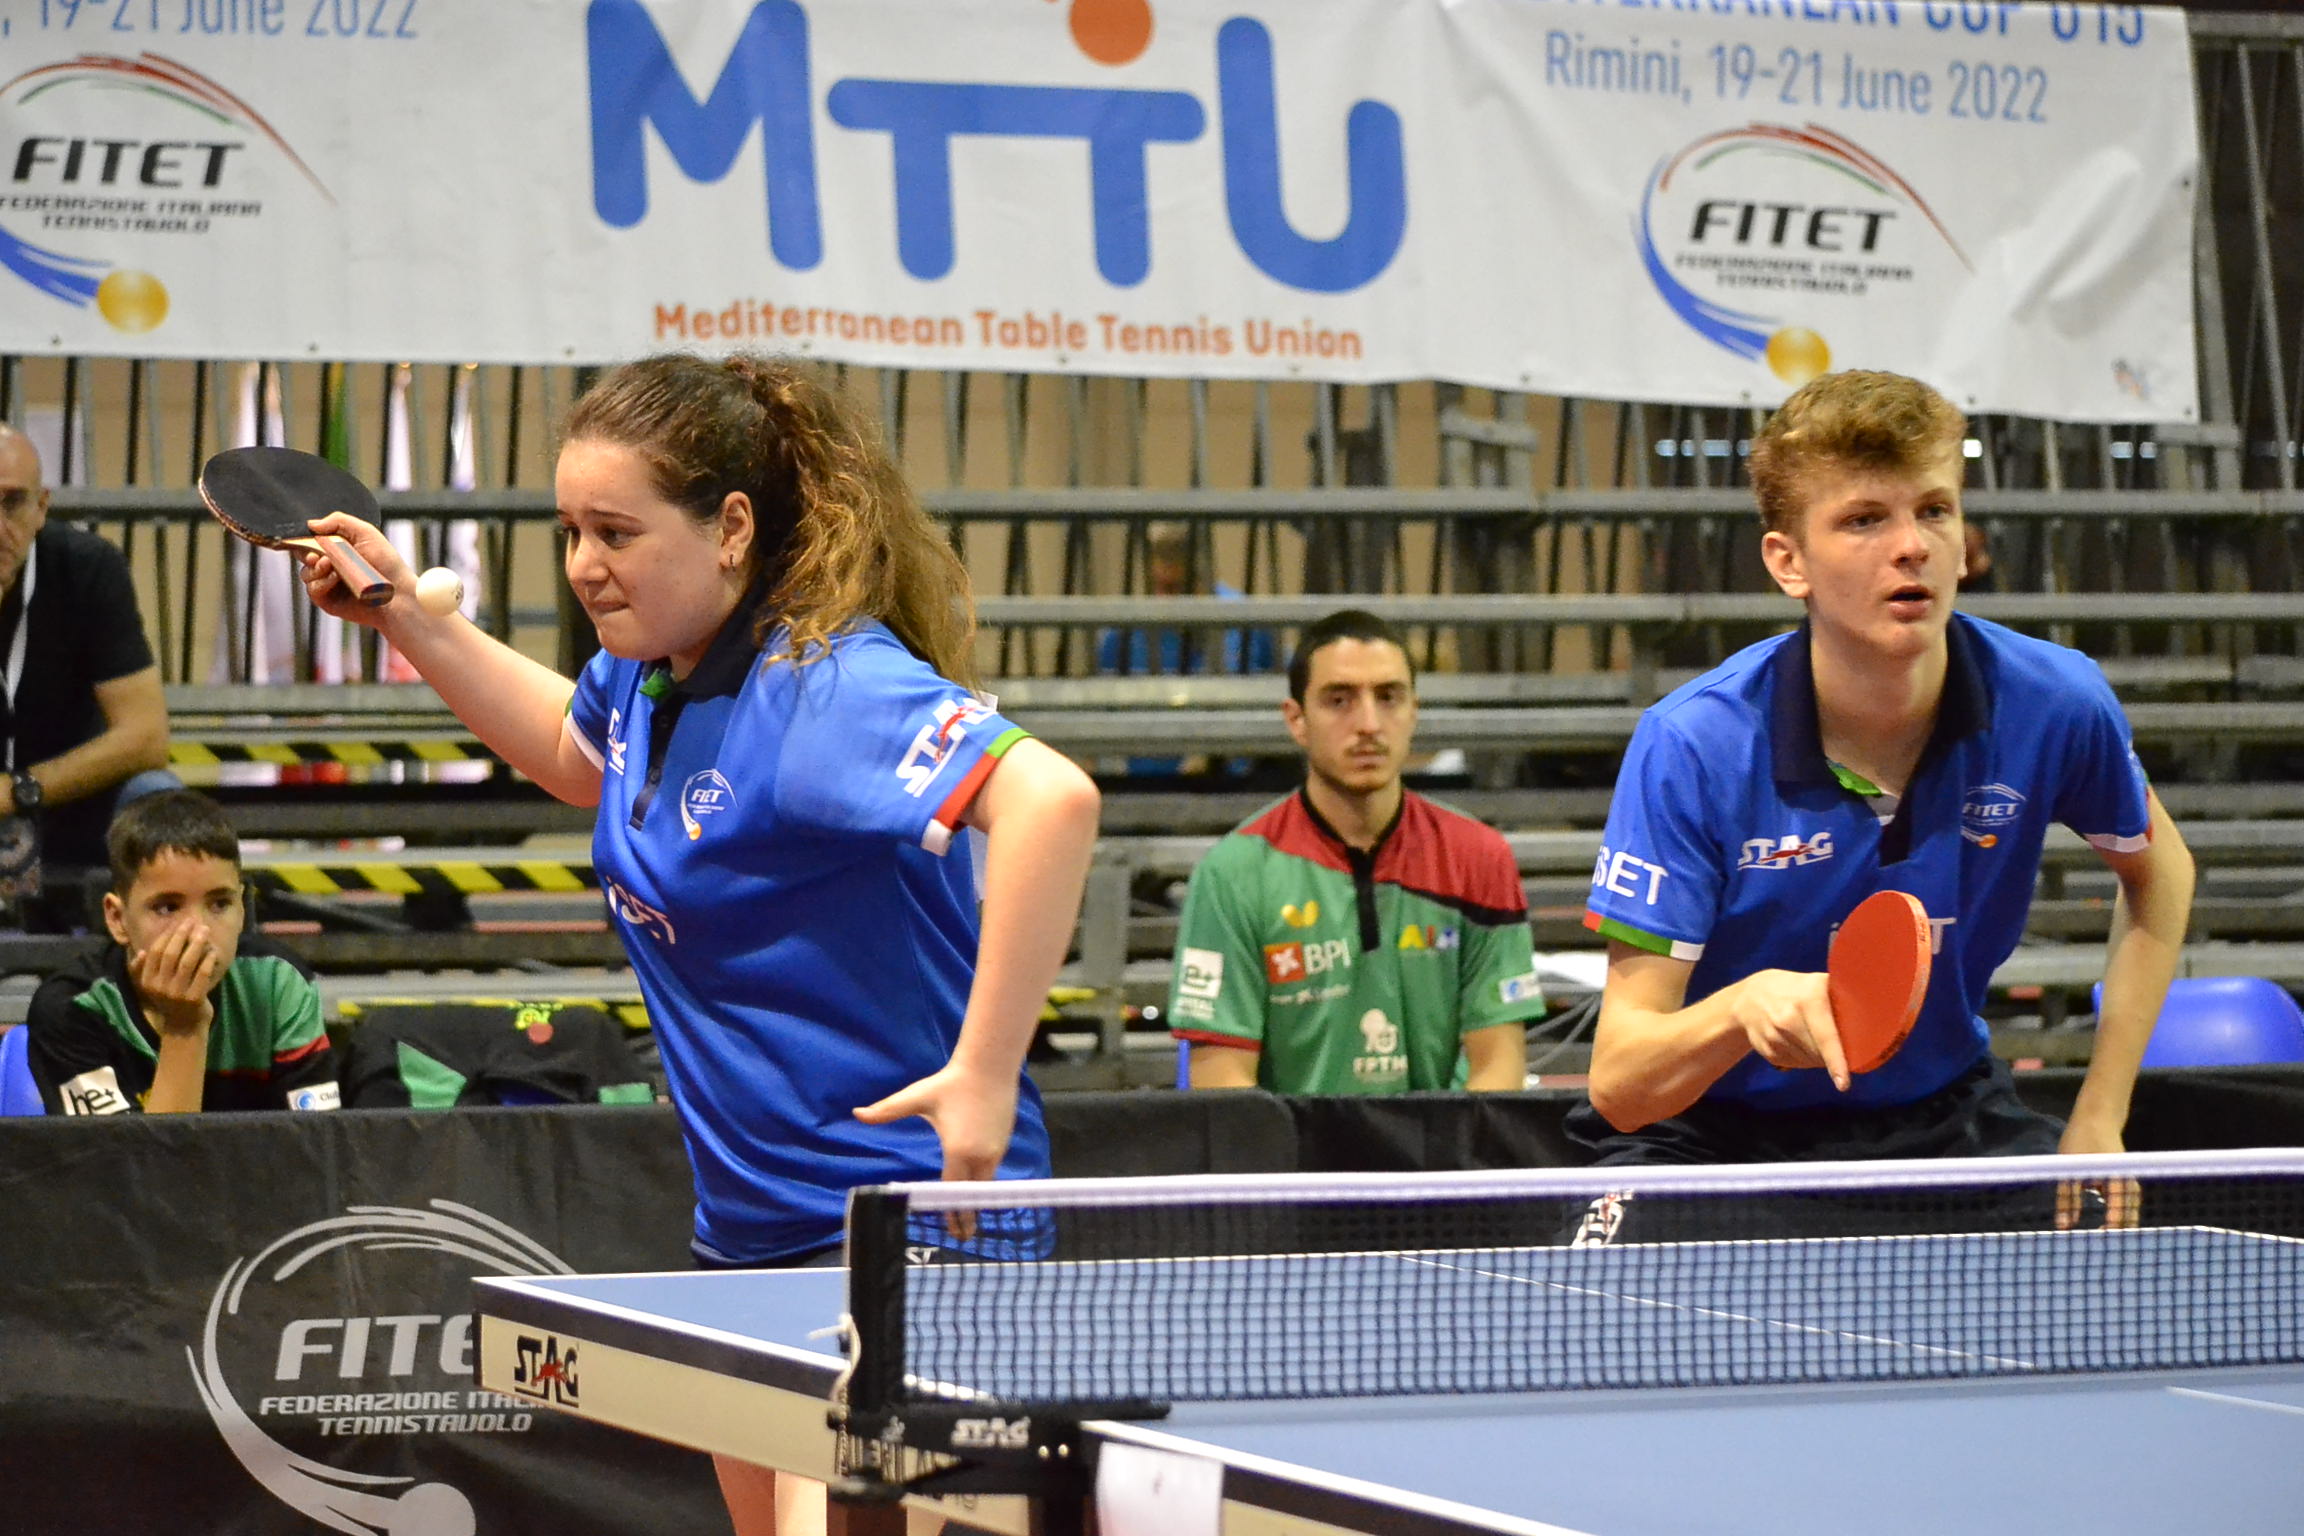 MTTU Under 15 Championships 2022 Giorgia Filippi e Giacomo Izzo in azione